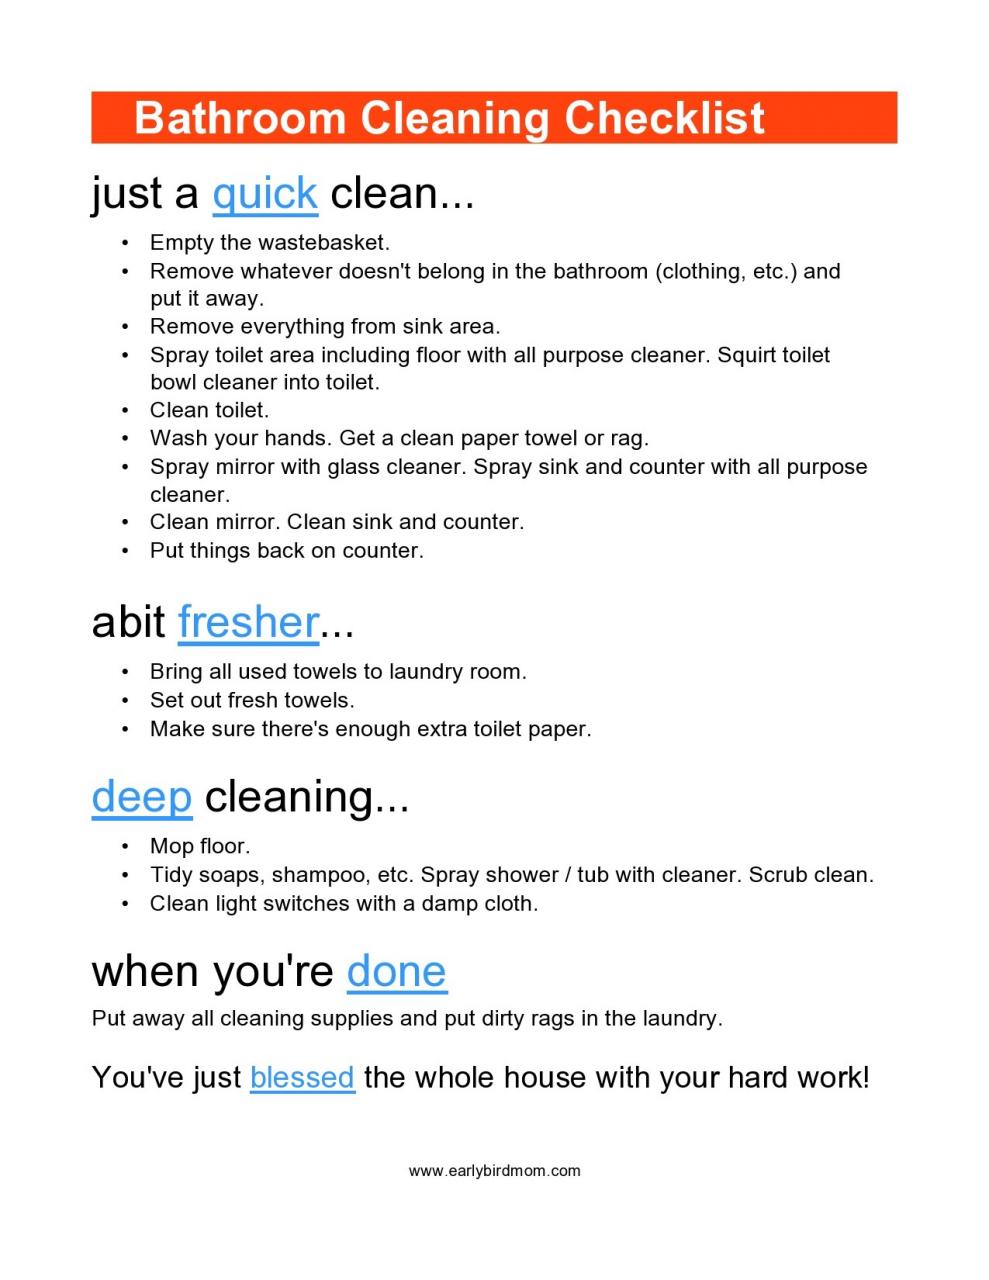 Lista de verificación de limpieza de baño gratis 21